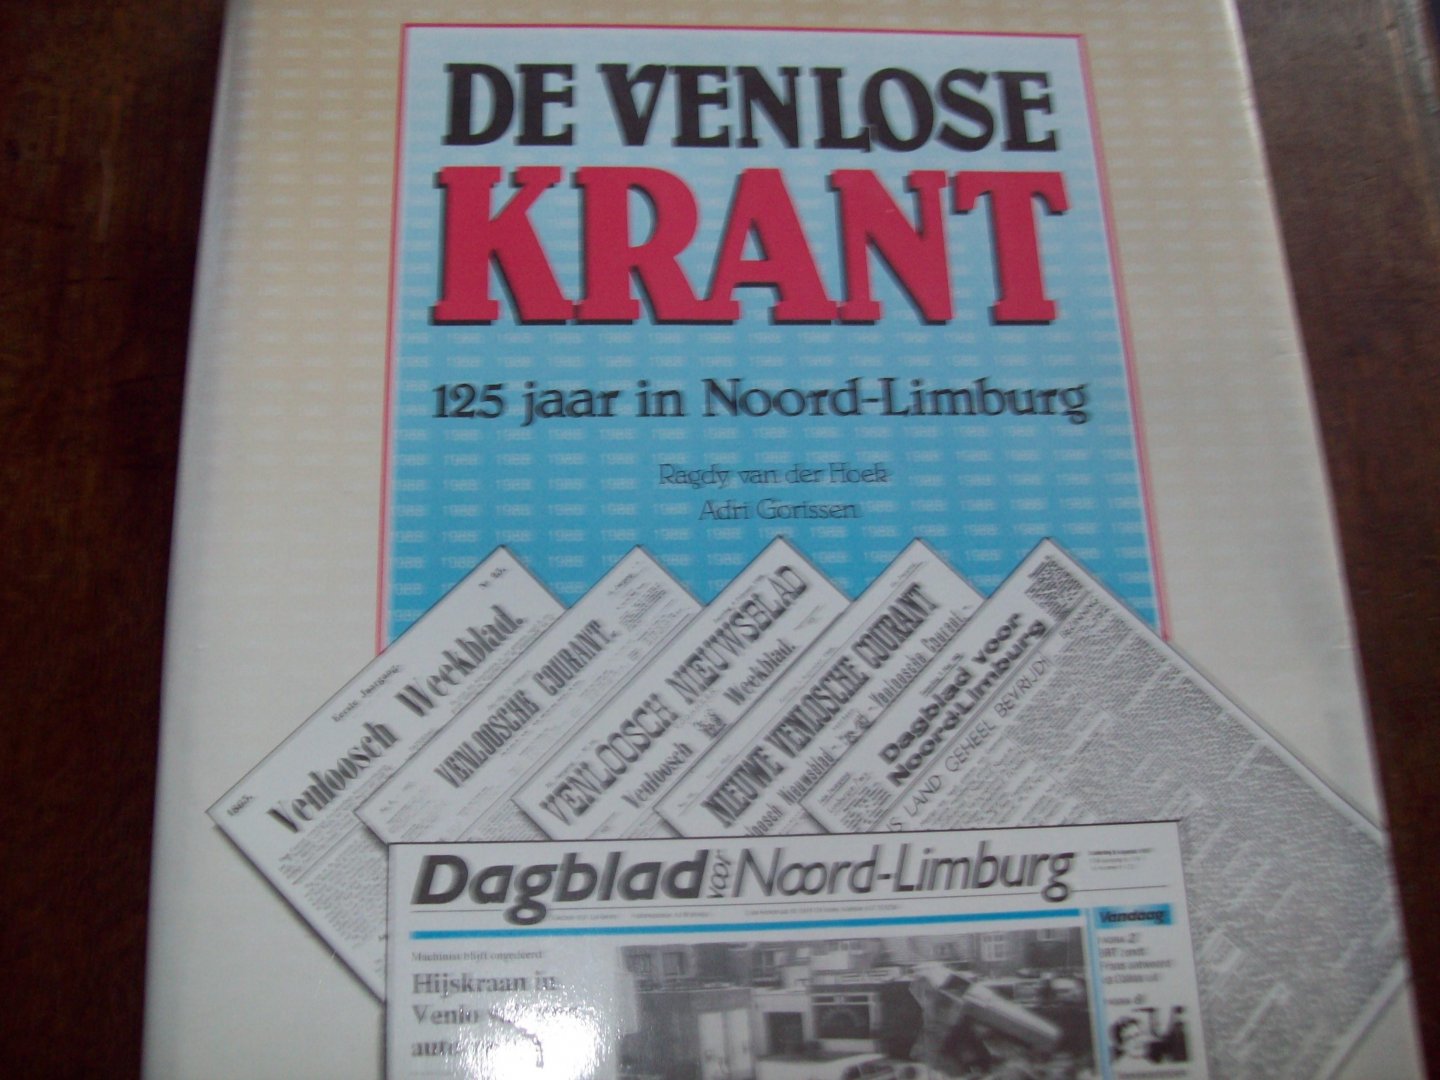 Ragdy van der Hoek & Adri Gorissen - "De Venlose Krant"  125 jaar in Noord-Limburg